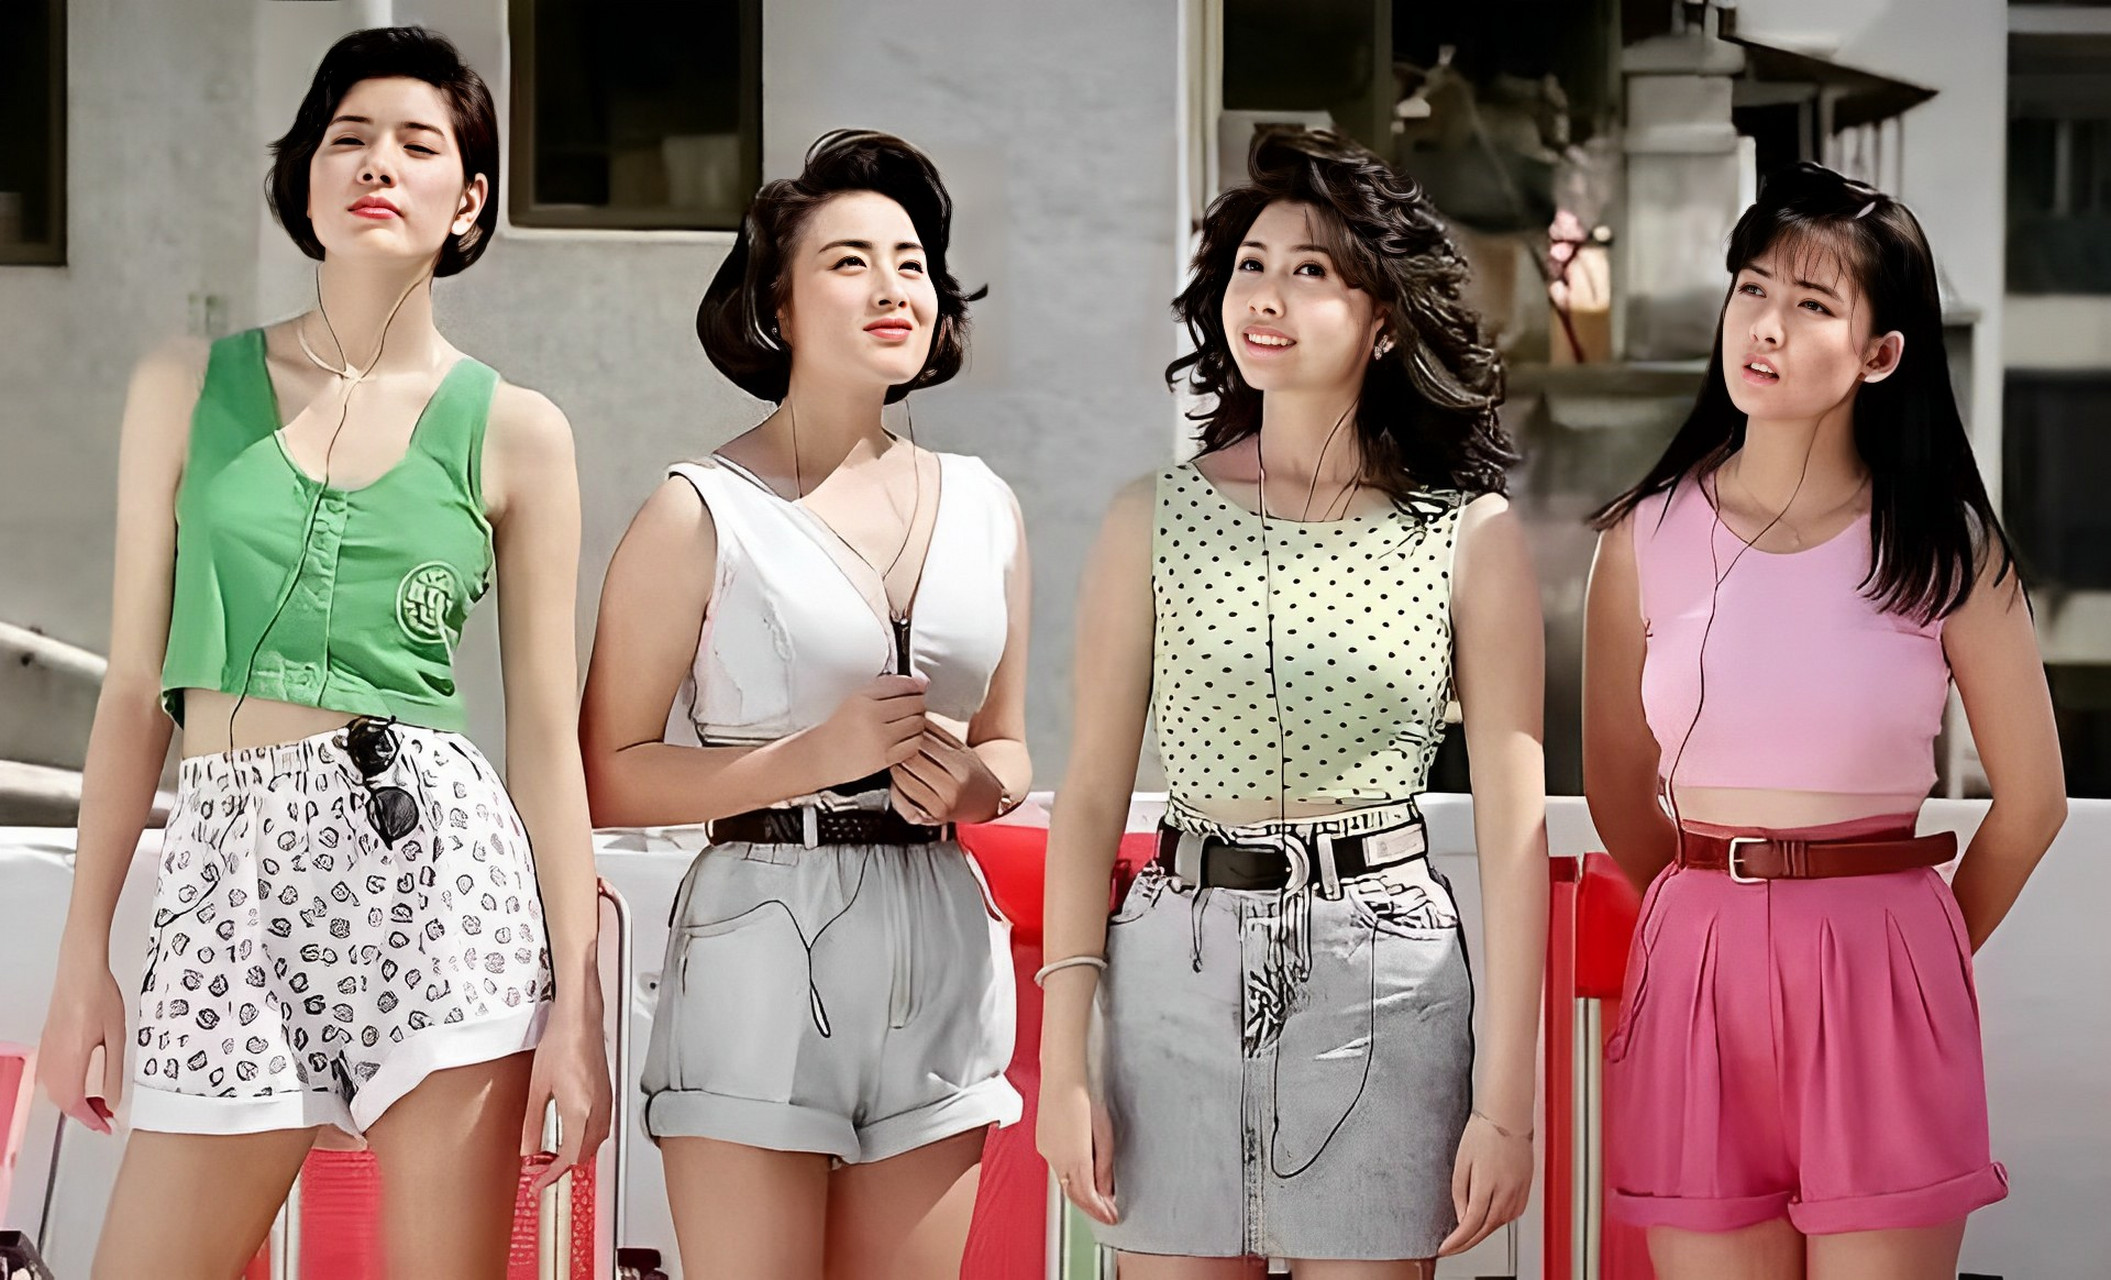 这是上个世纪80年代,香港四大美人的罕见合影